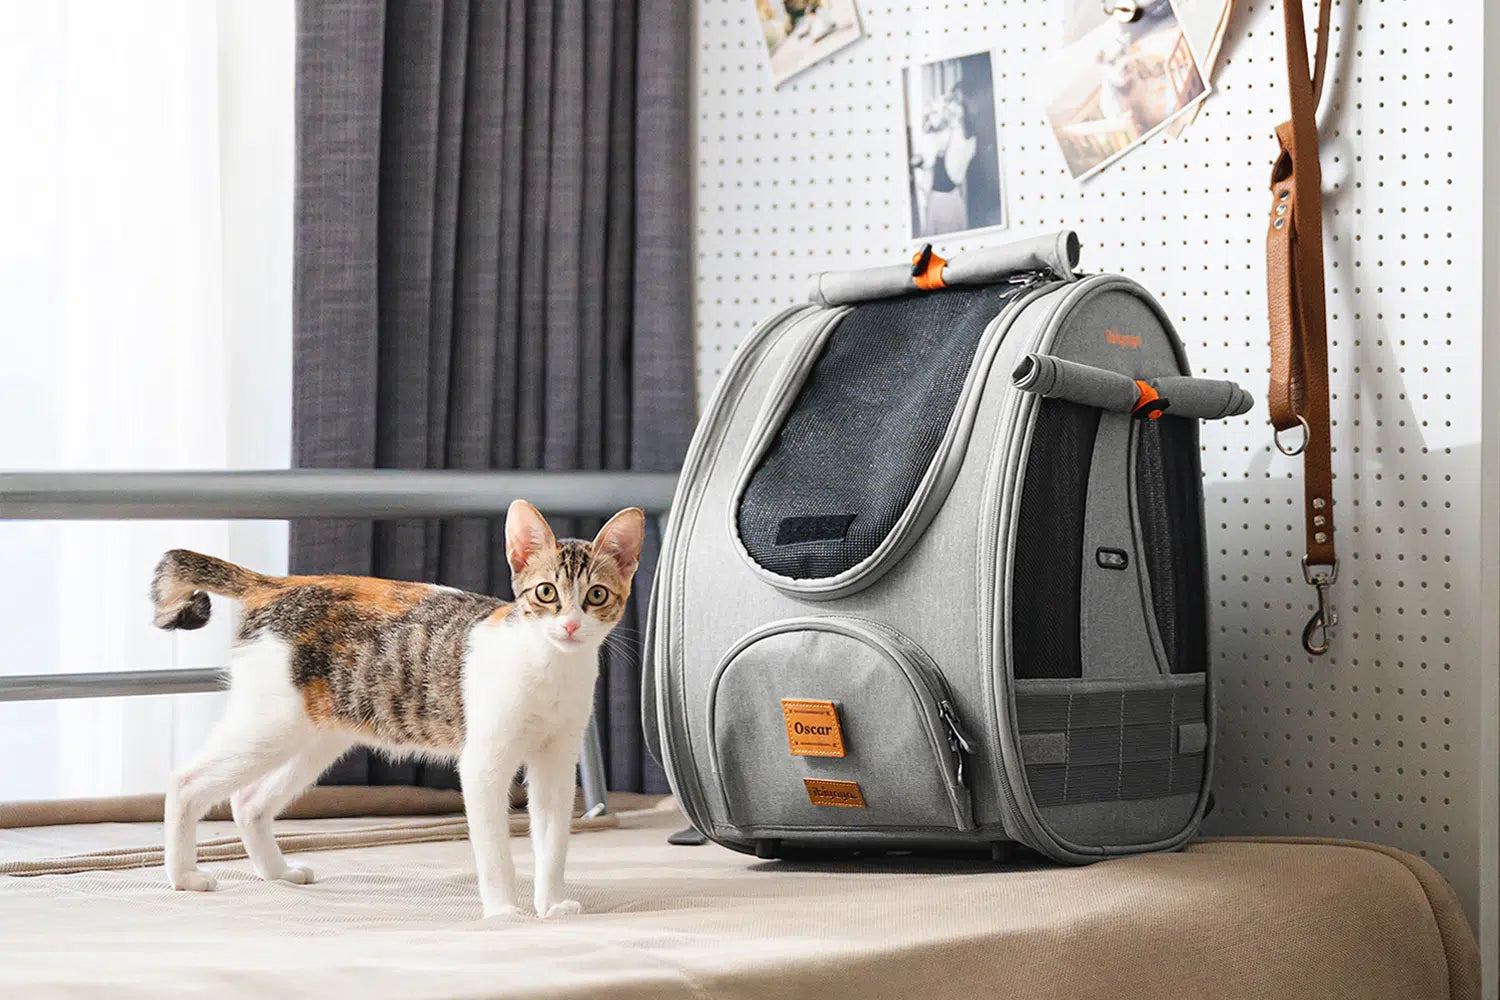 Mr. Pen- Pet Carrier, Cat Carrier, Dog Carrier, Cat Bag Carrier, Cat Travel  Carrier, Soft Cat Carrier, Dog Travel Carrier, Pet Travel Carrier, Dog